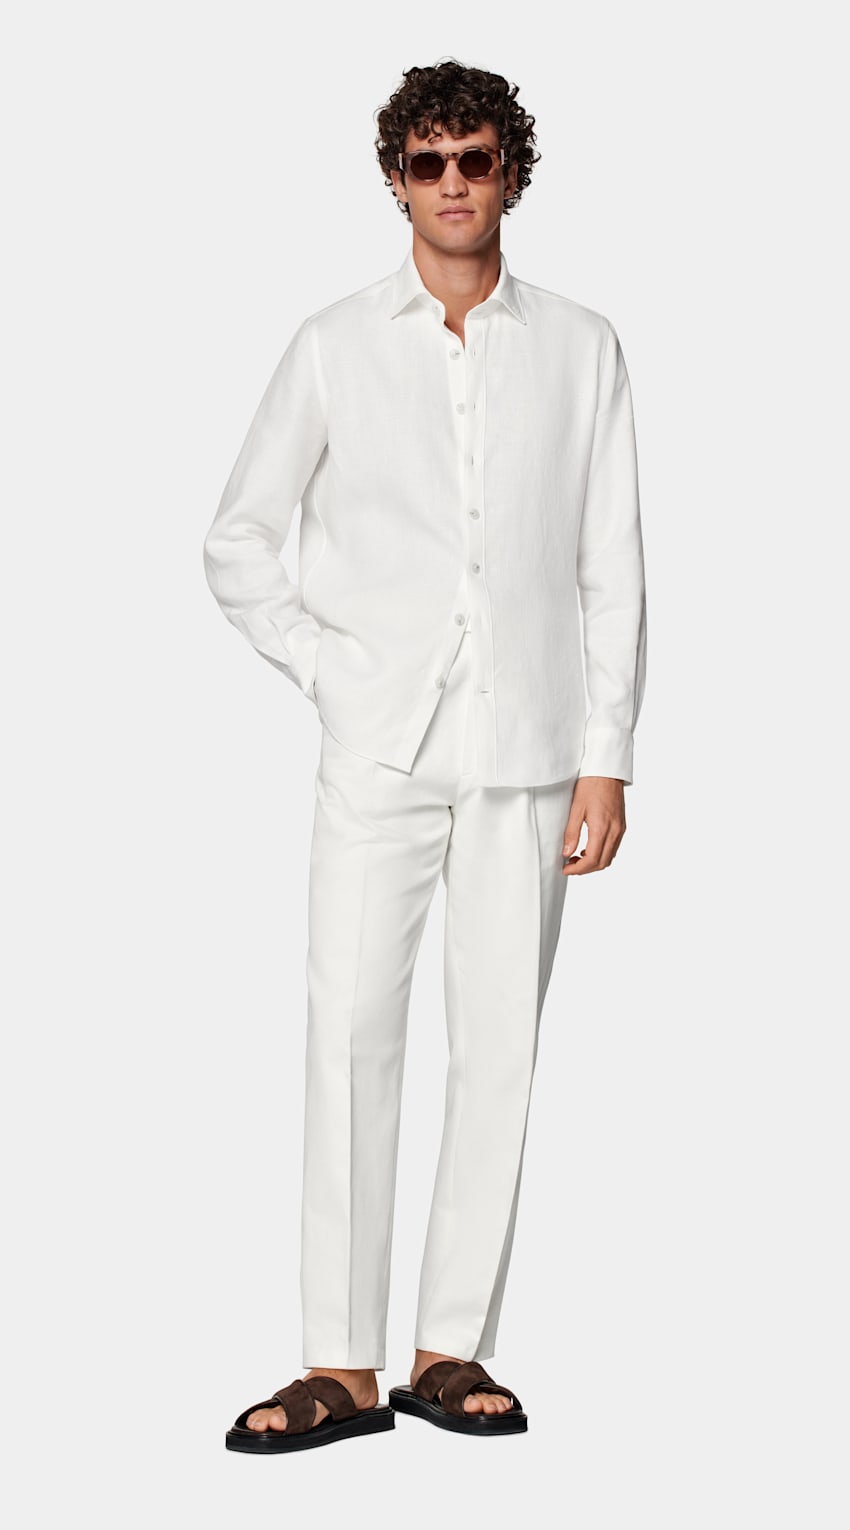 SUITSUPPLY Puro lino - Di Sondrio, Italia Camicia bianca tailored fit